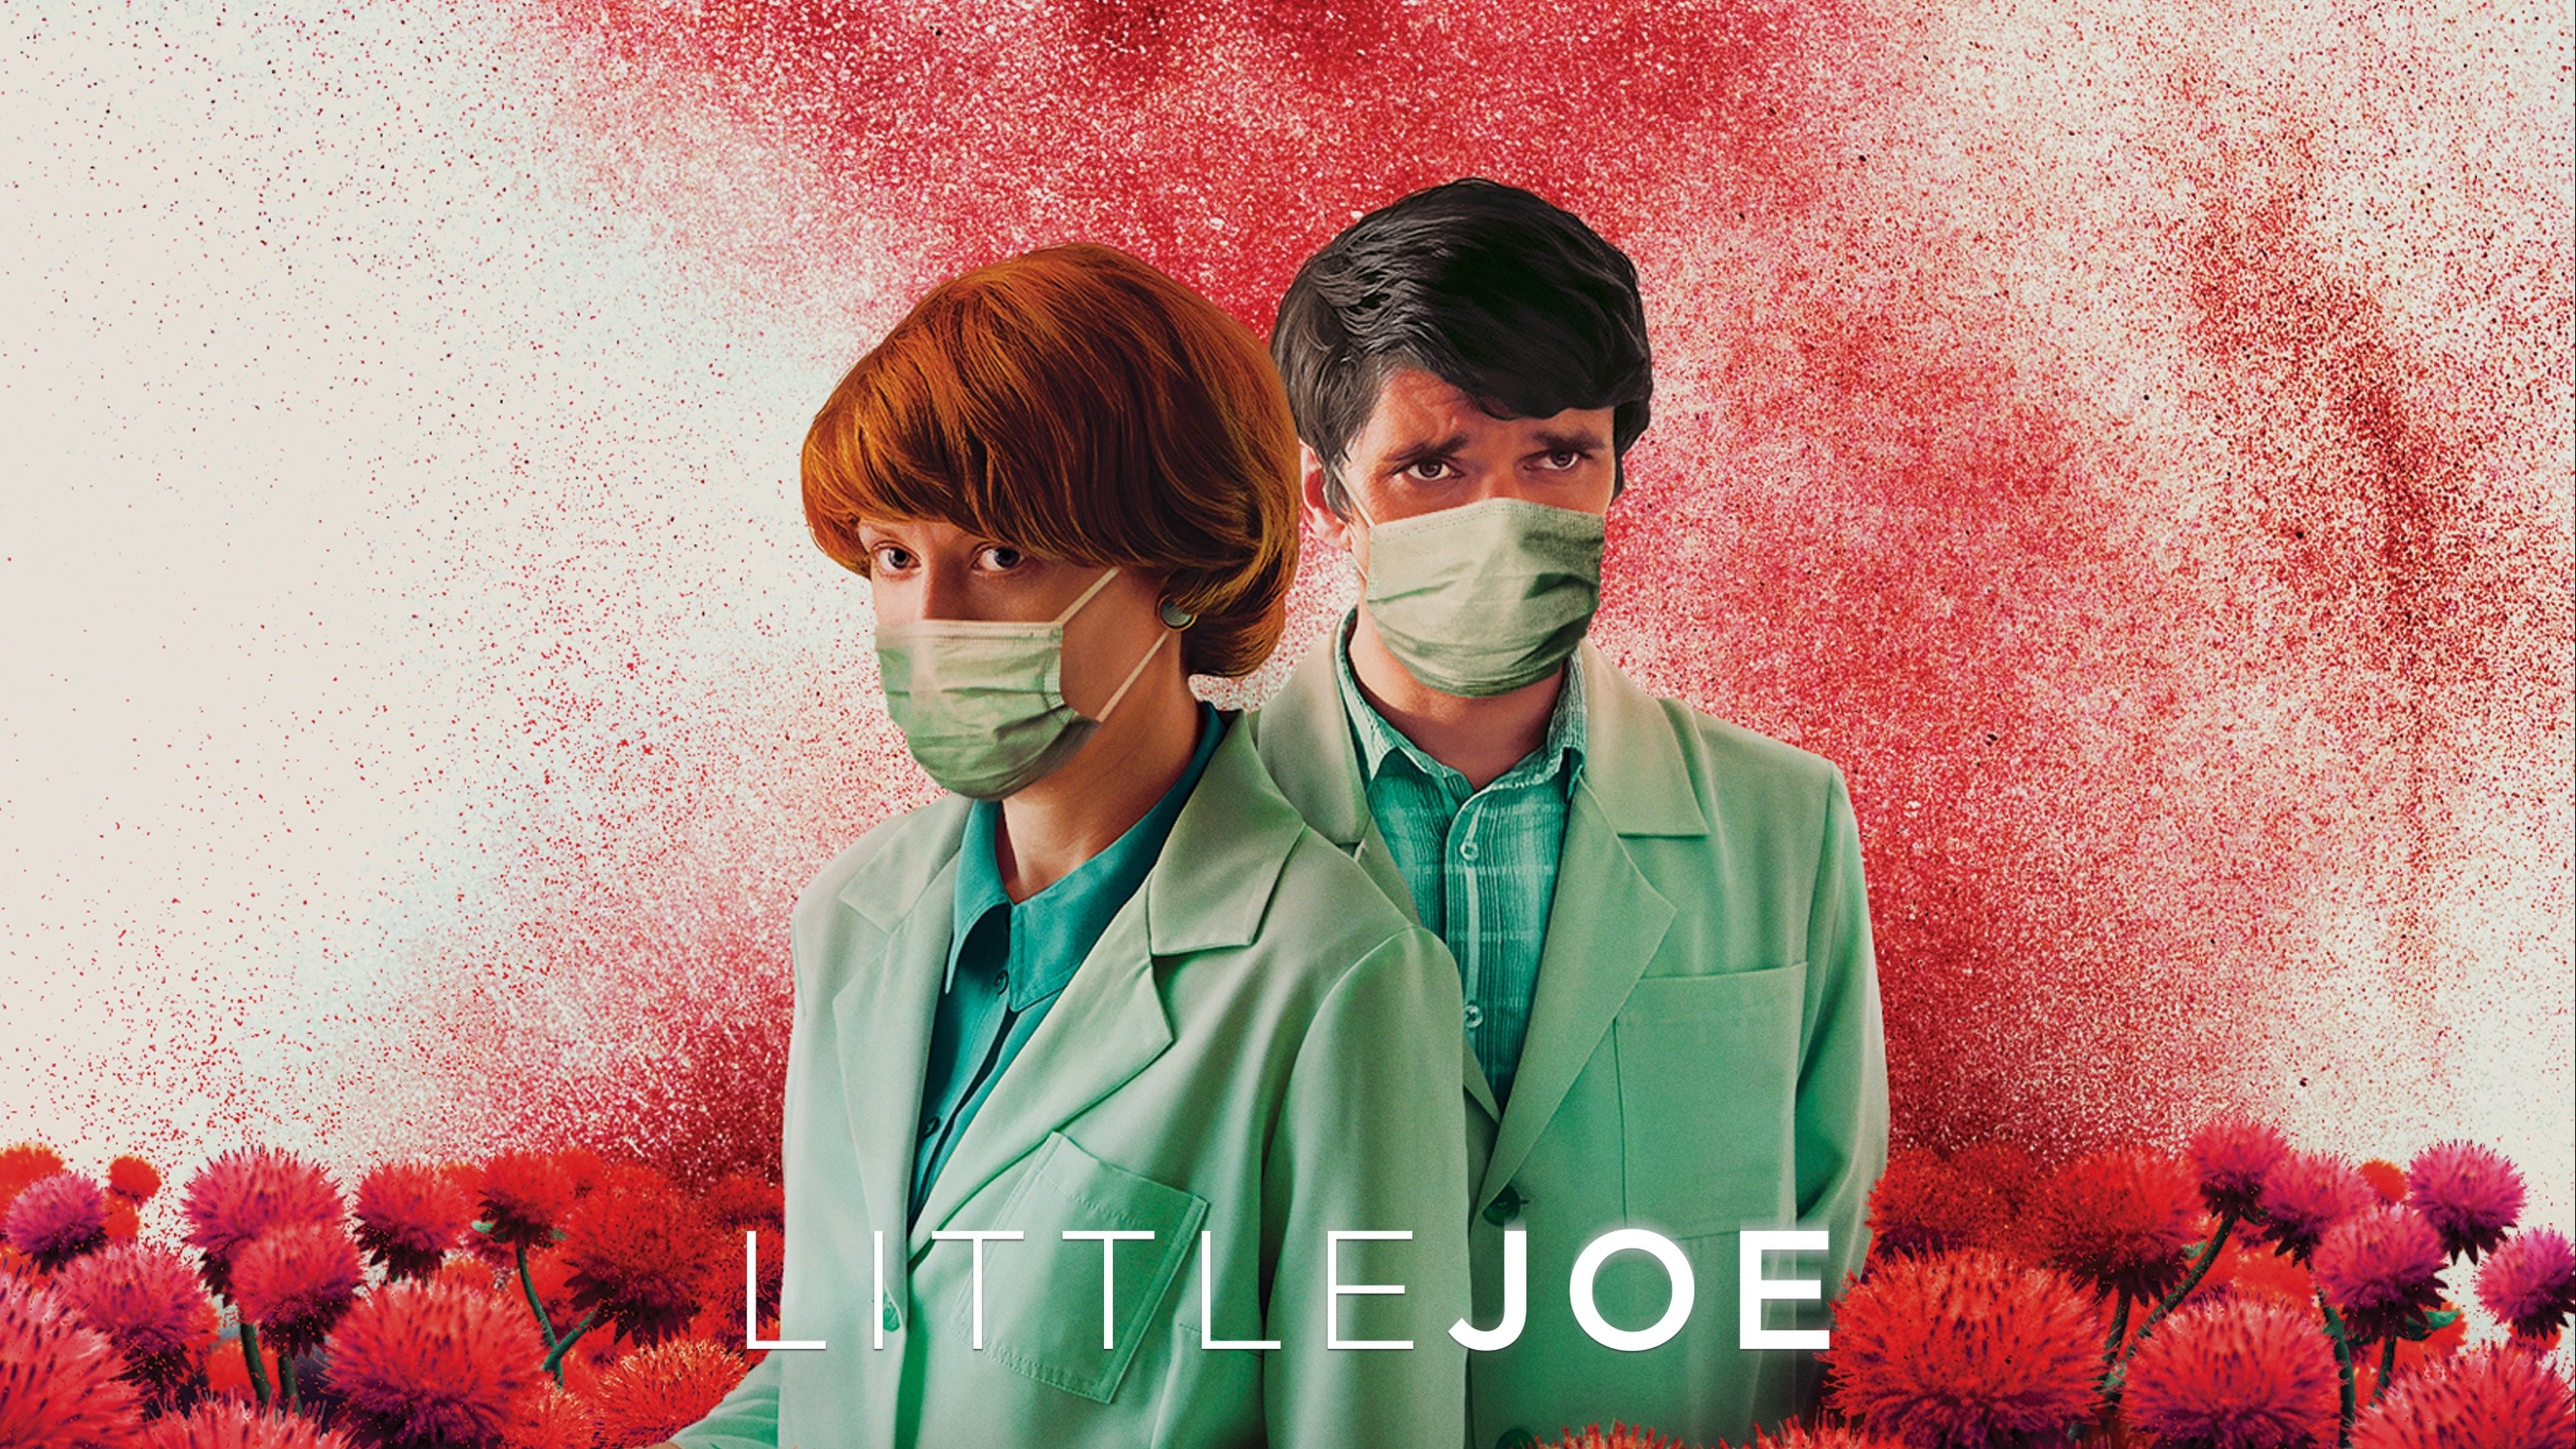 Little Joe Review: A Horror Film Plants a Dangerous Message